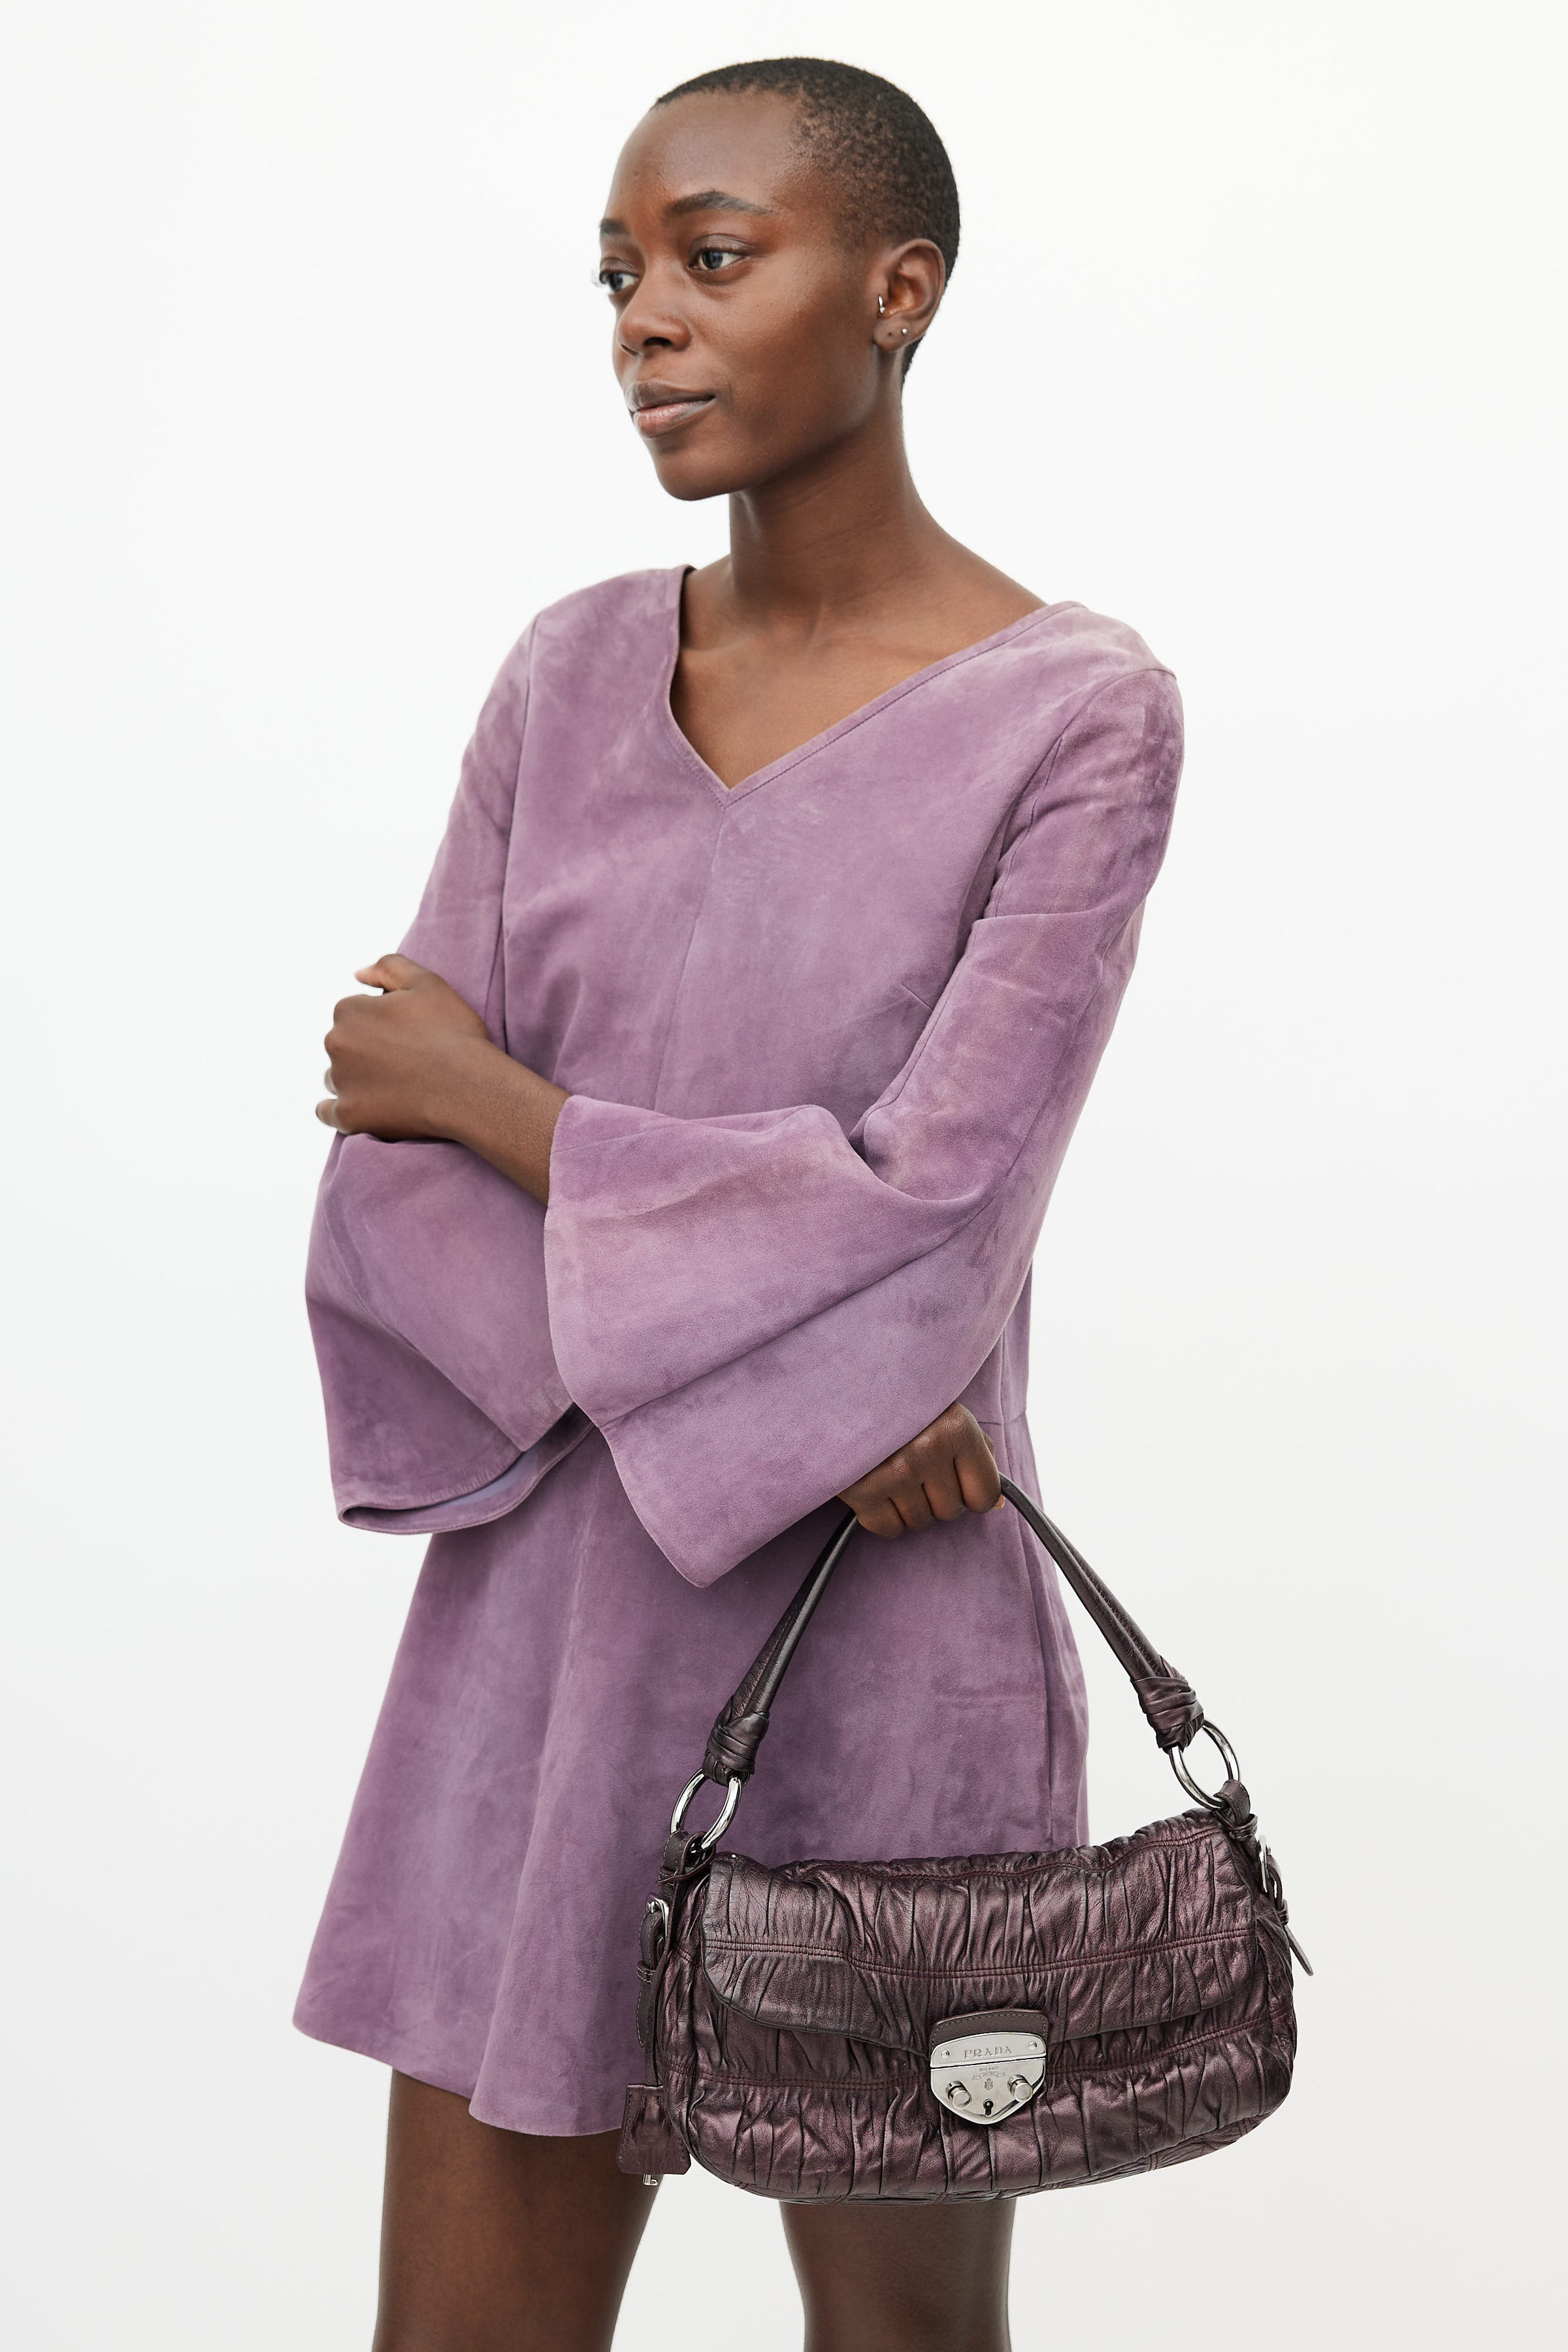 Prada // Purple Medium Galleria Saffiano Leather Bag – VSP Consignment